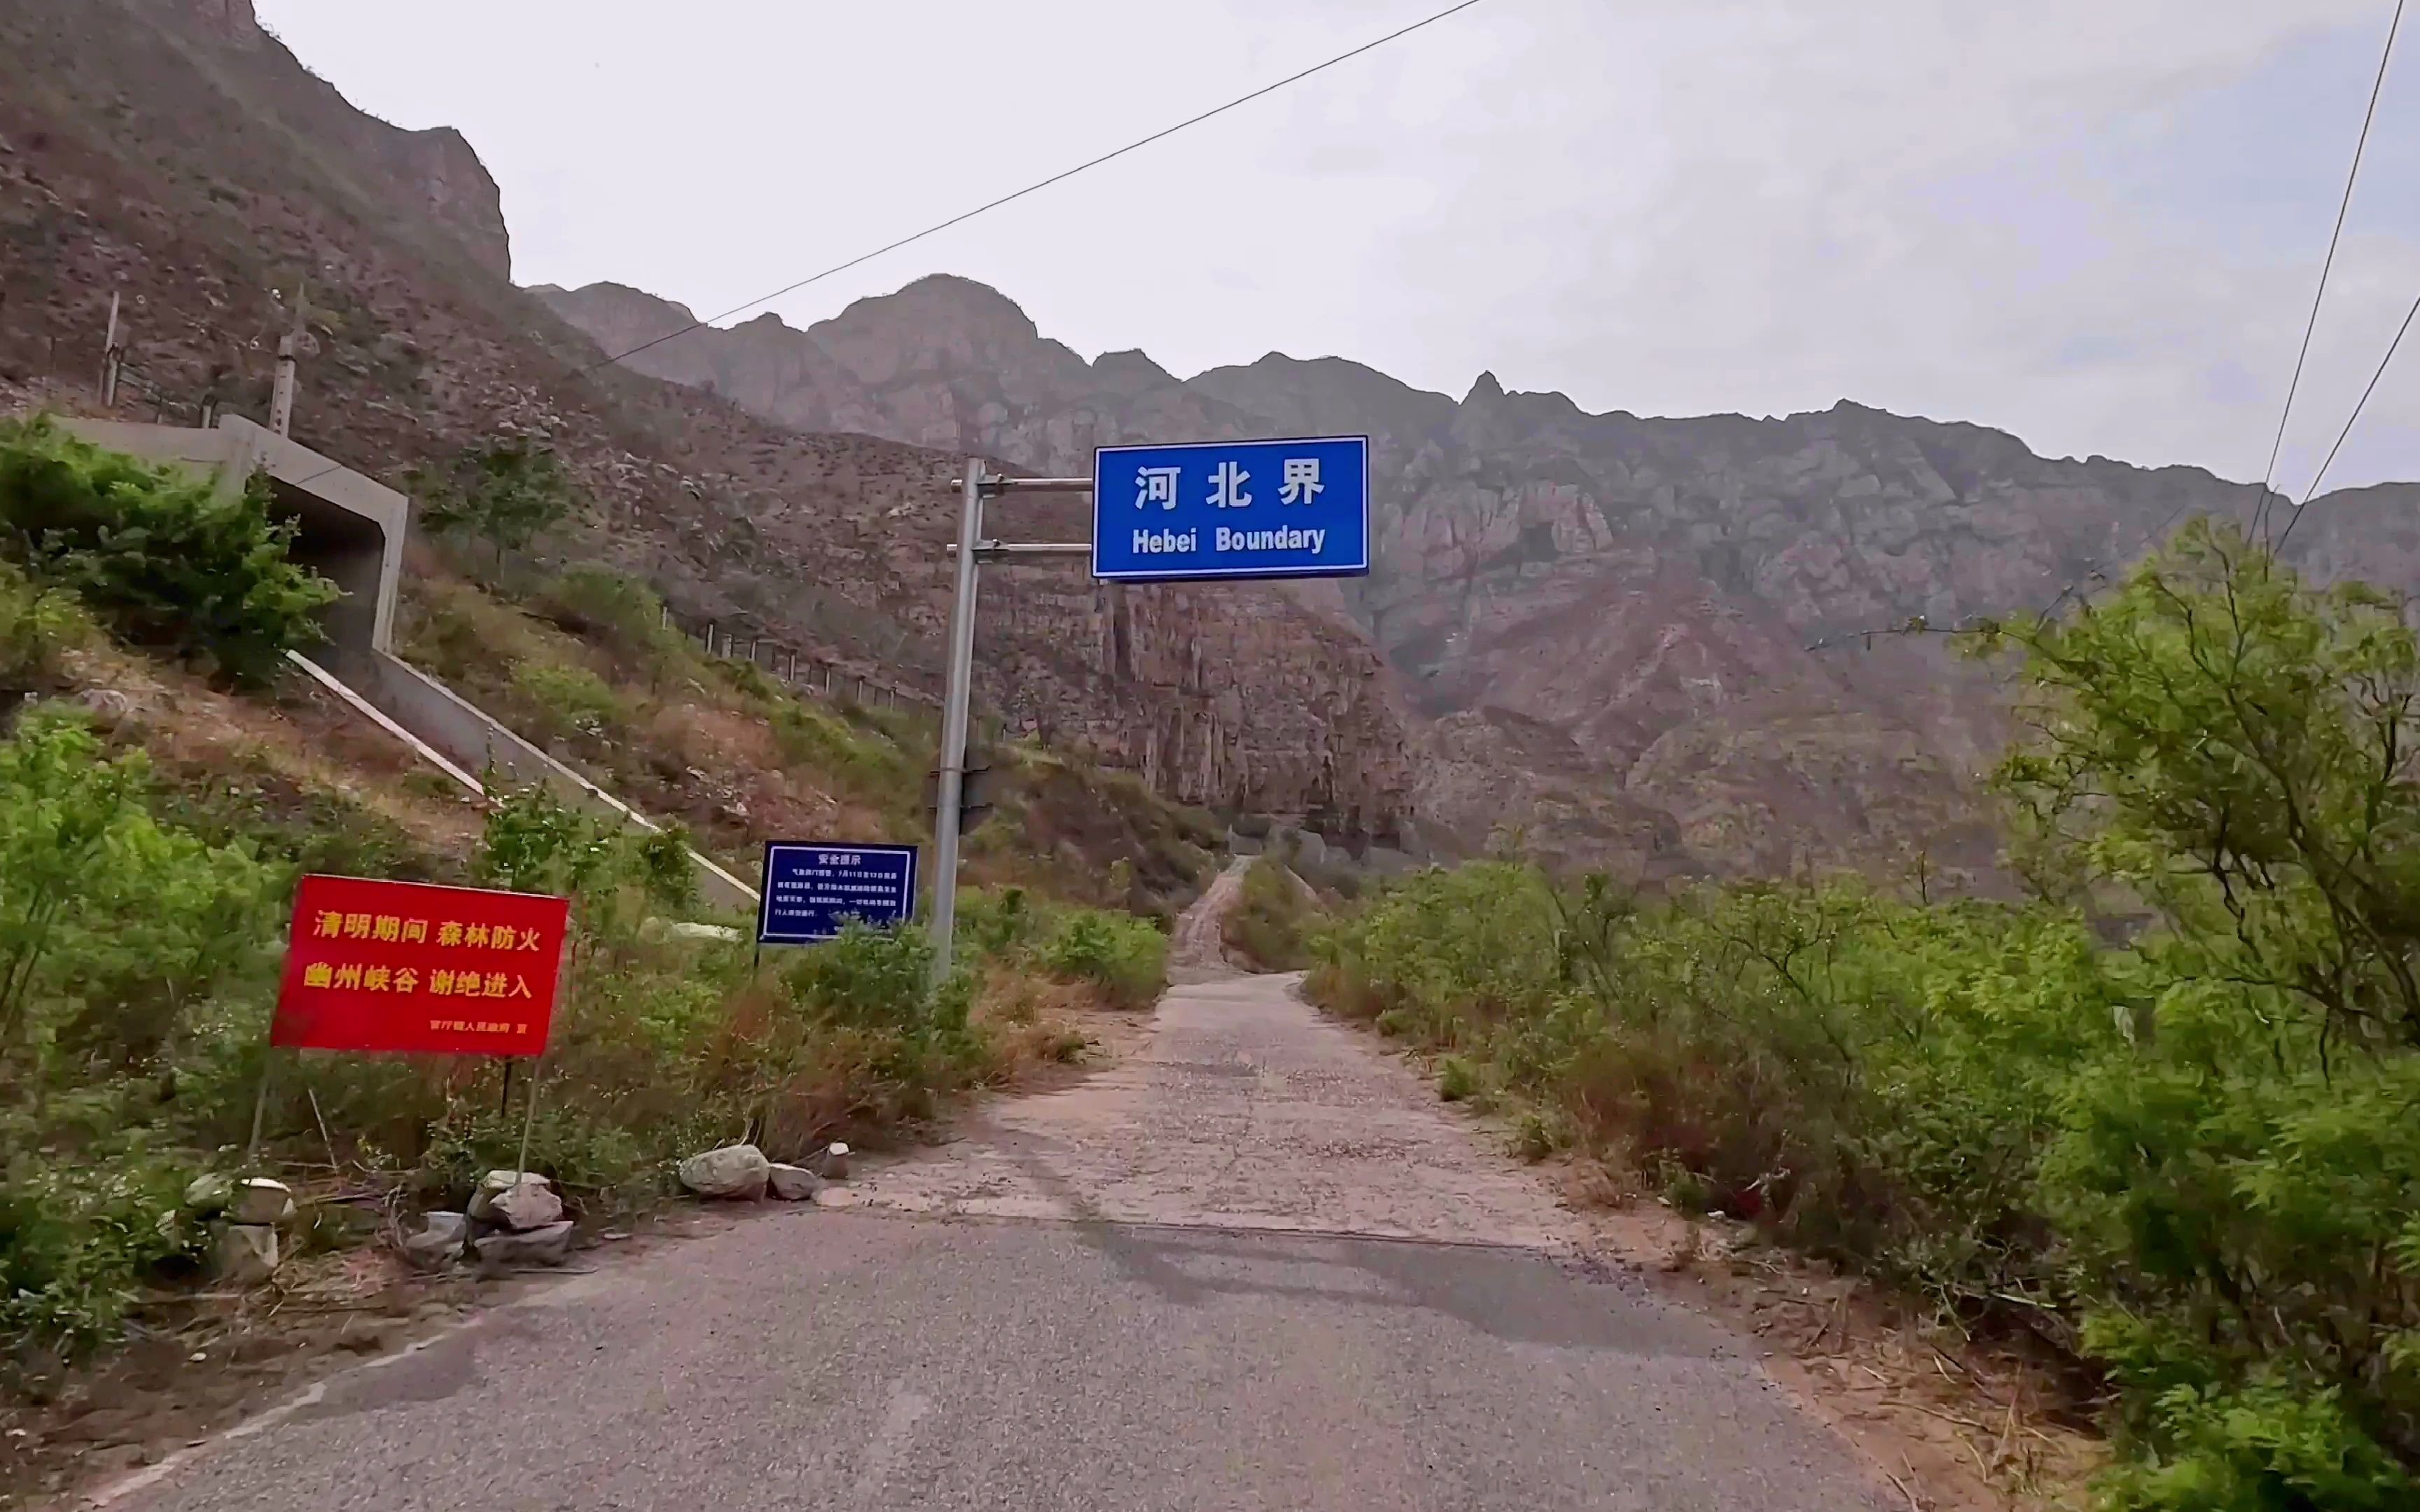 从北京到河北不用看路牌，看路况就够了，京冀经济啥时候能看齐？